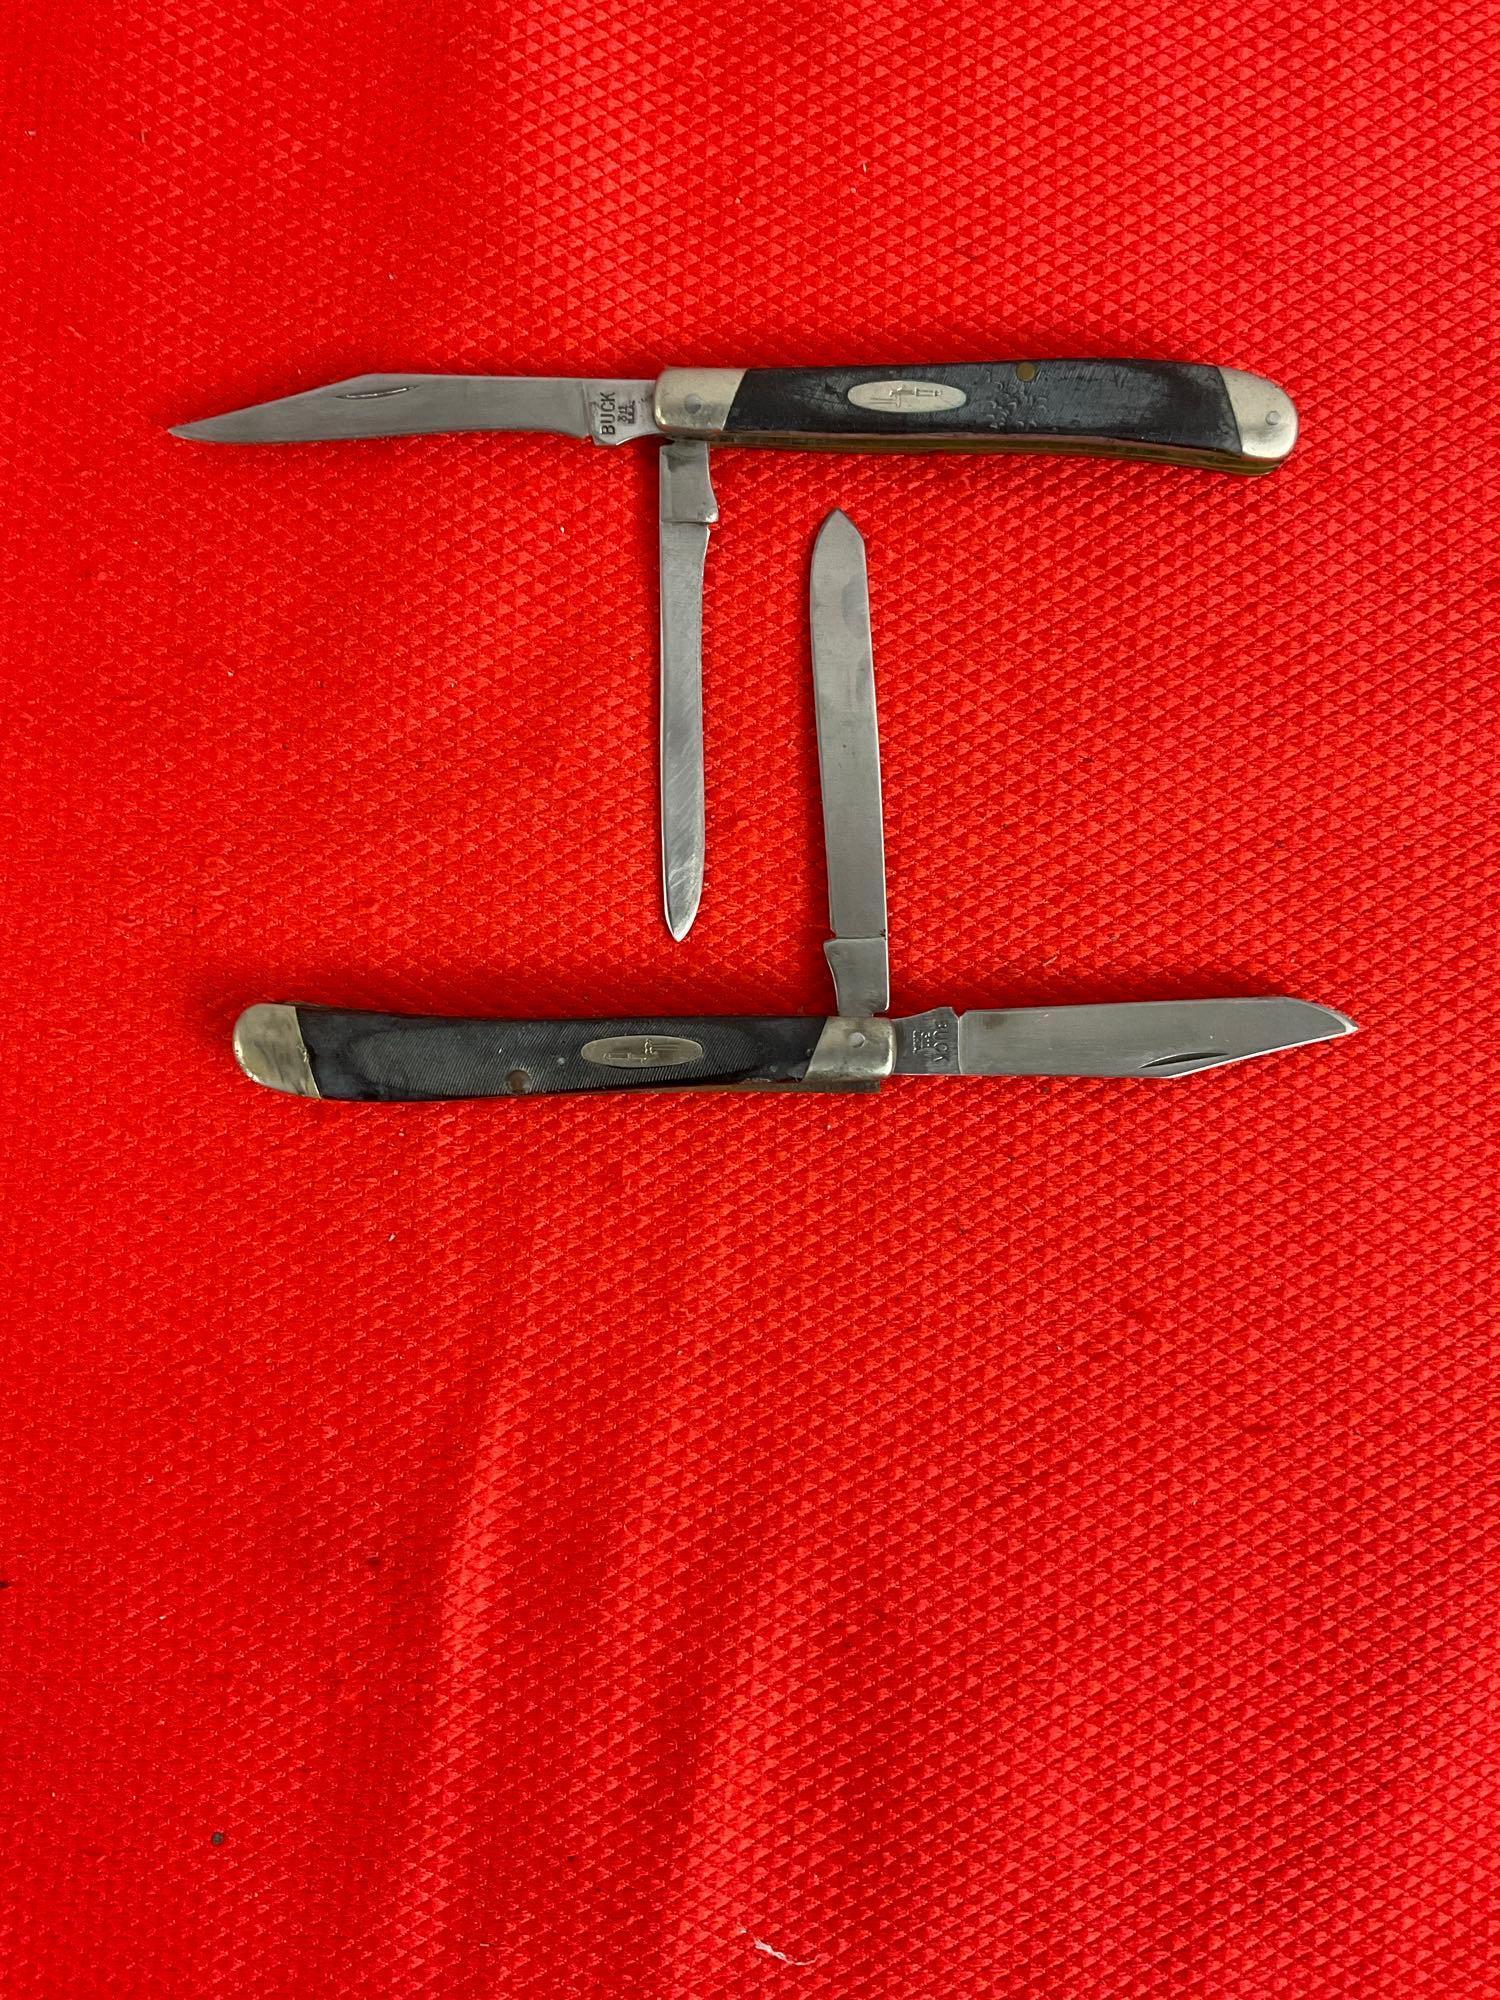 2 pcs Vintage Buck 3" Steel Folding 2-Blade Produce Fruit Pocket Knife Model 311 w/ Delrine Handl...